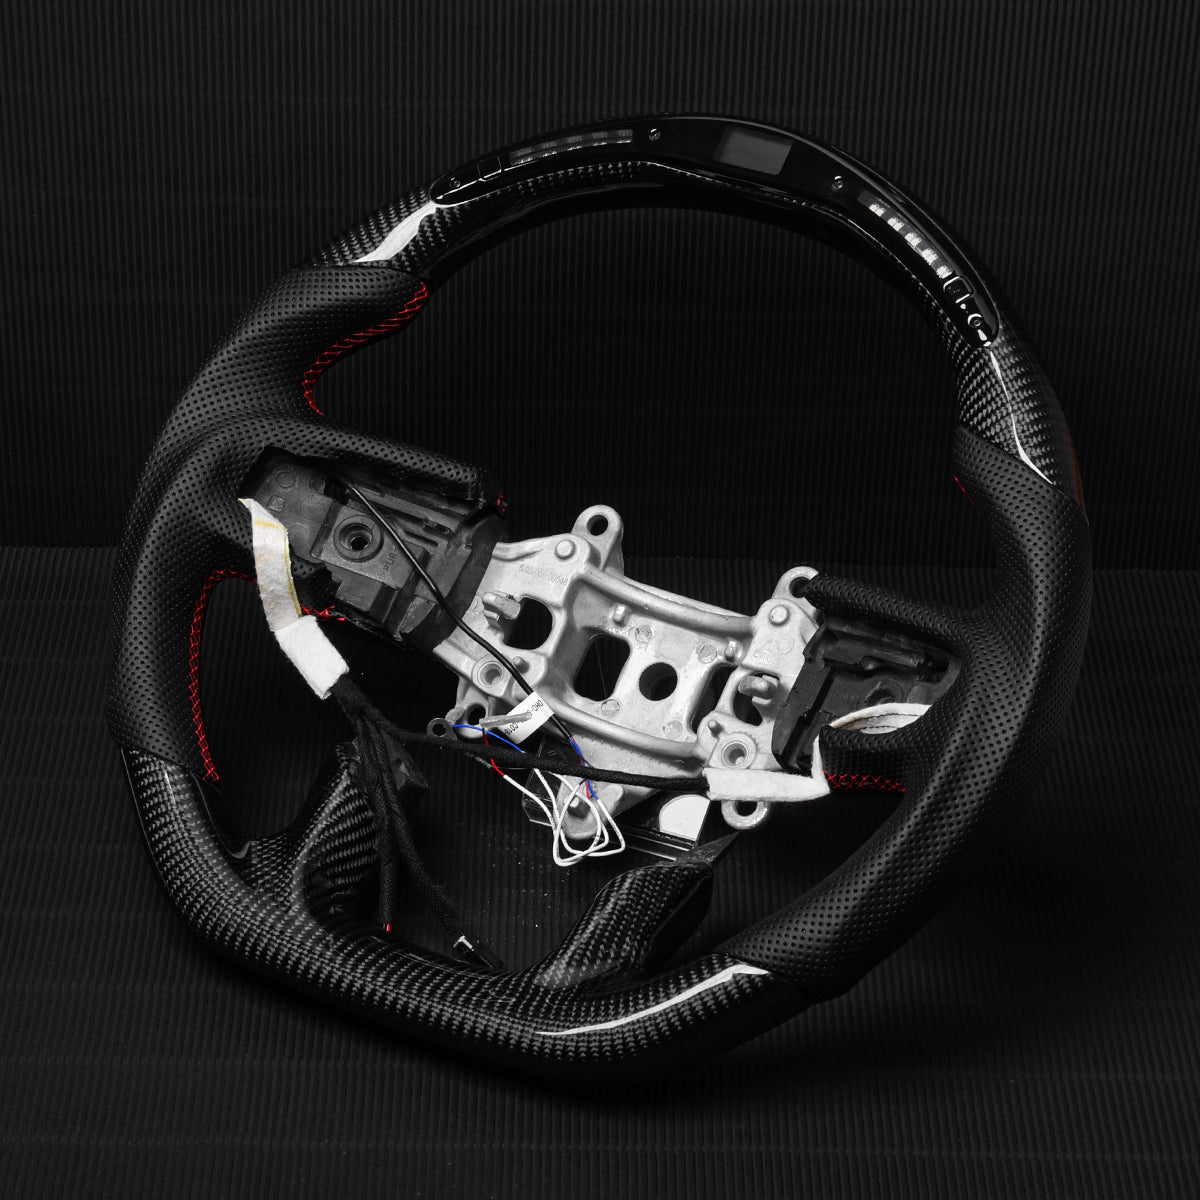 Revolve carbon fiber Flat Customized Sport LED Steering Wheel 2019-2021 RAM 1500 2500 3500 - revolvesteering